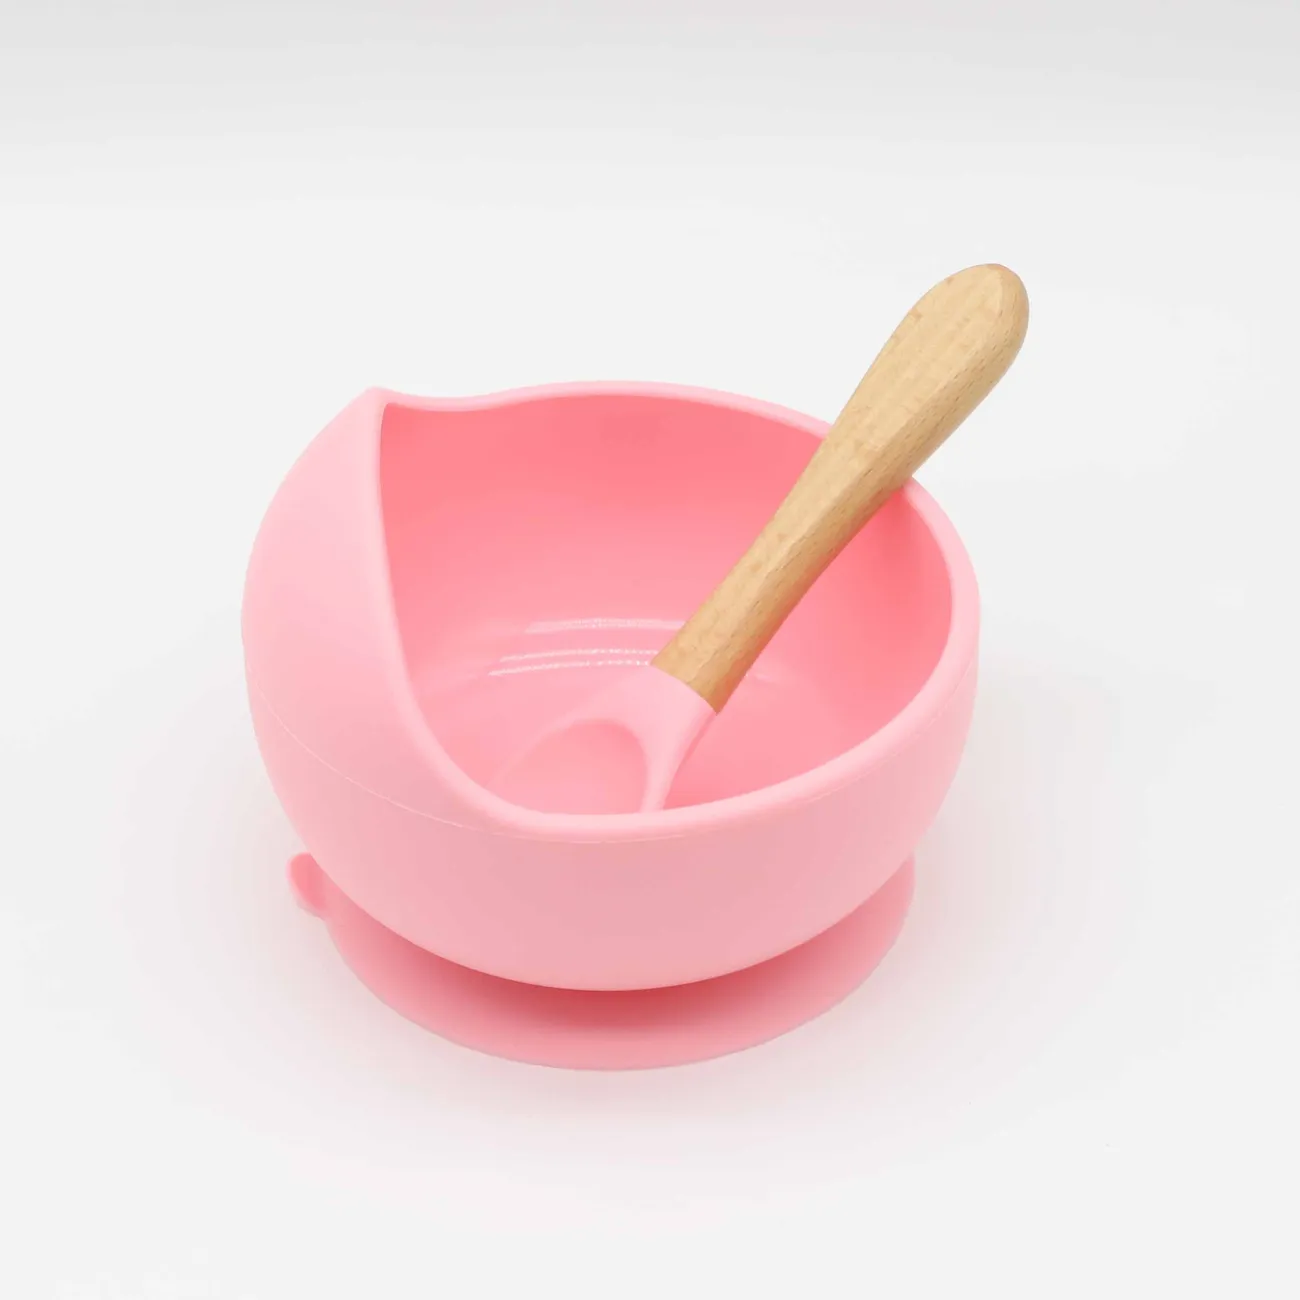 2 Stück Baby-Silikon-Saugschale und Löffel mit Holzgriff Baby-Kleinkind-Geschirr Selbstfütterungs-Utensilien-Set für das Selbsttraining Hell rosa big image 1